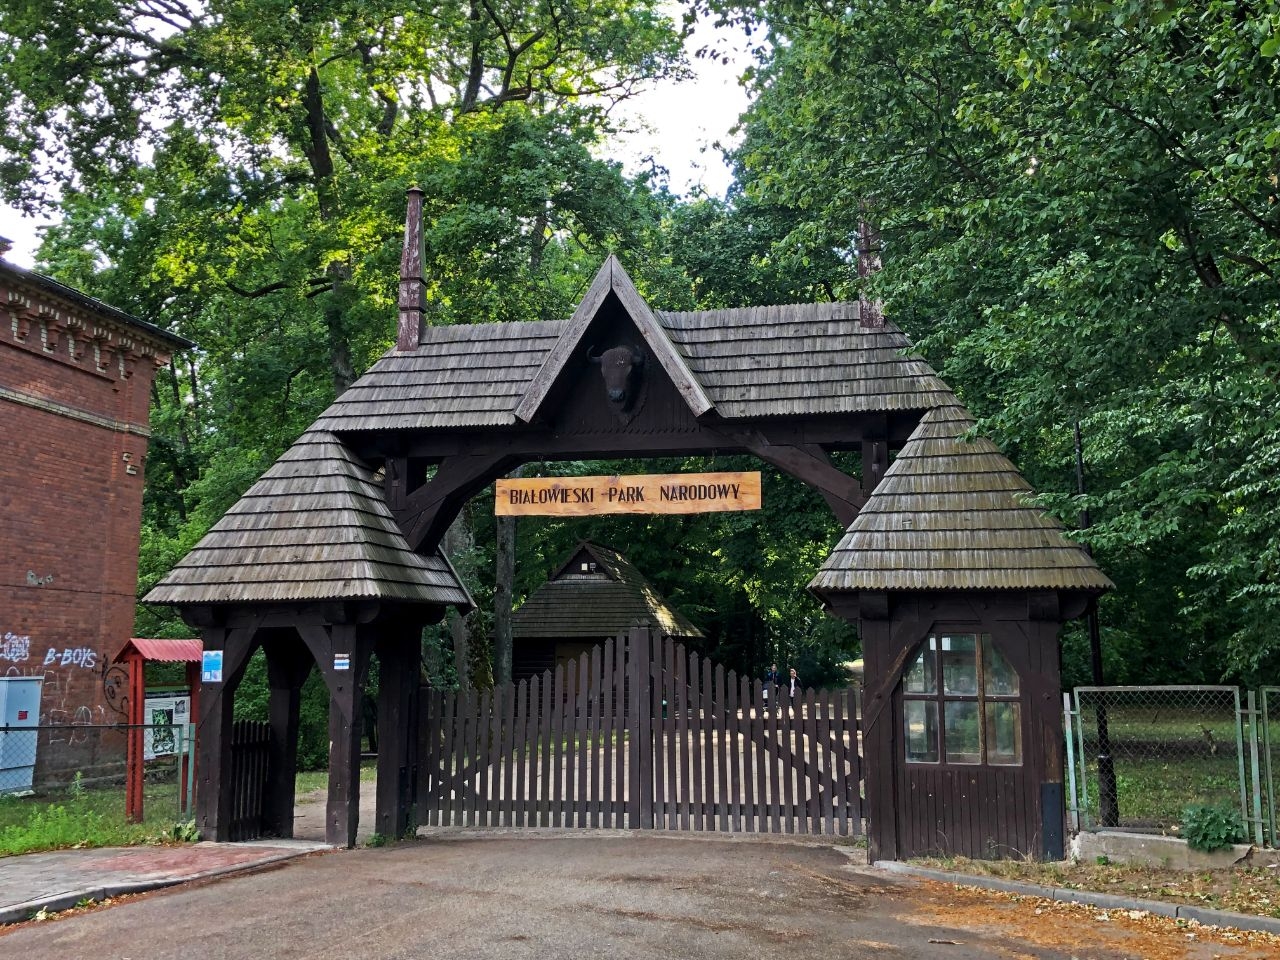 Общественный парк Беловежа Беловежский национальный парк, Польша